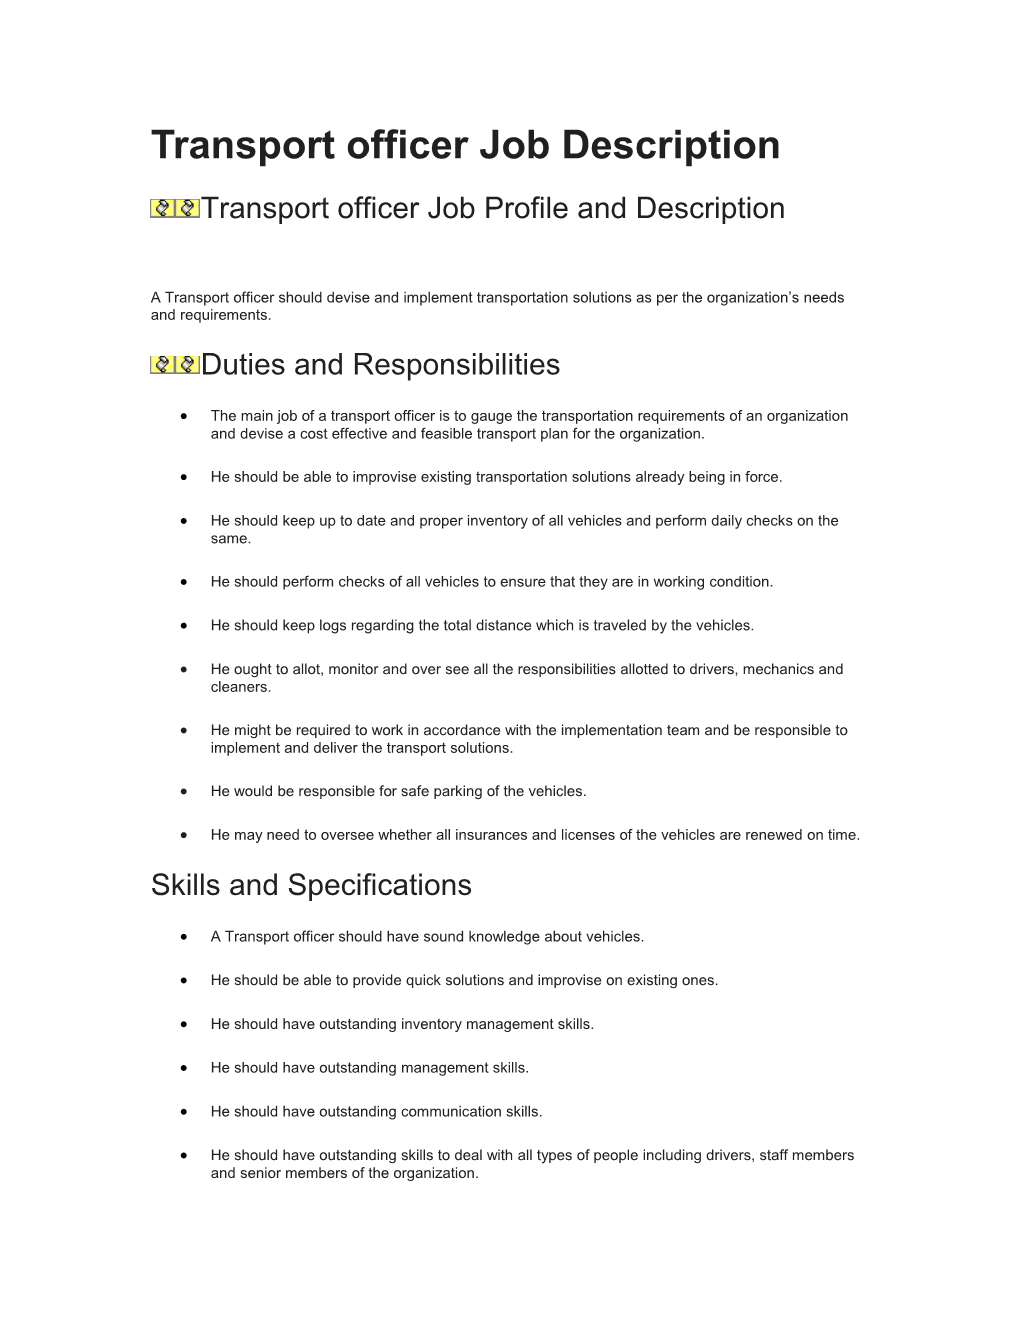 Transport Officer Job Description